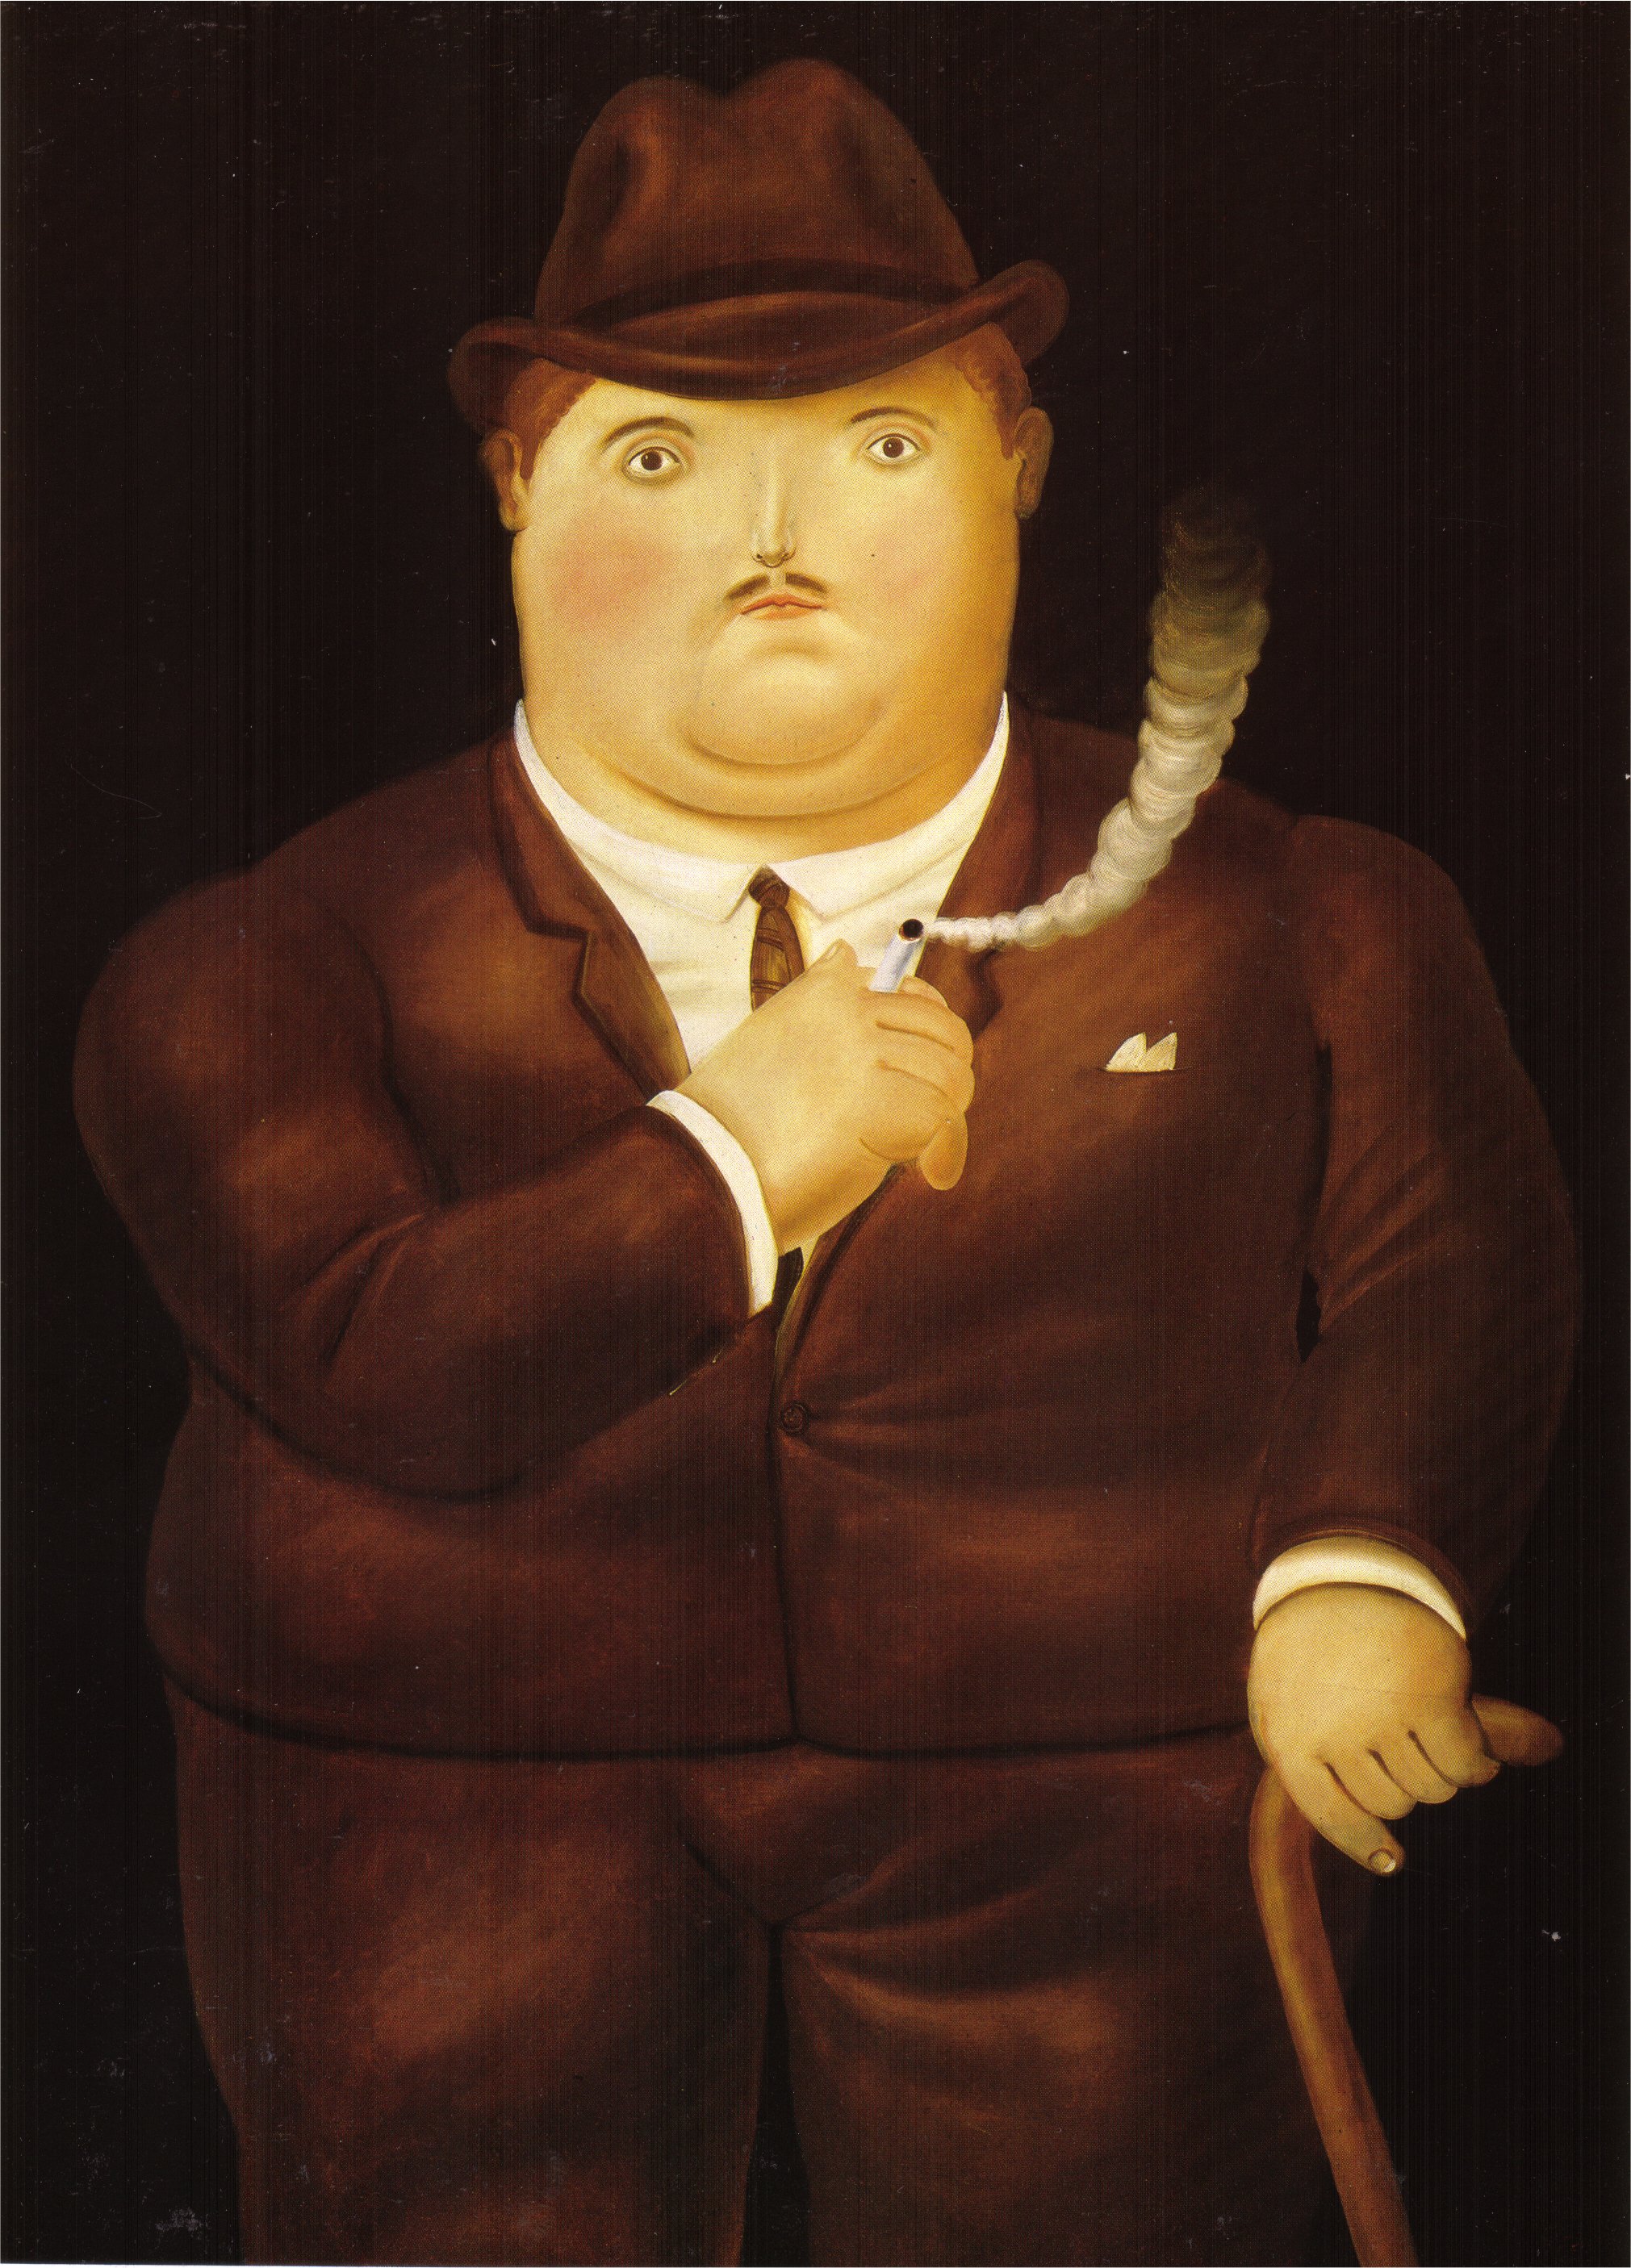 Man in a Tuxedo (1980).